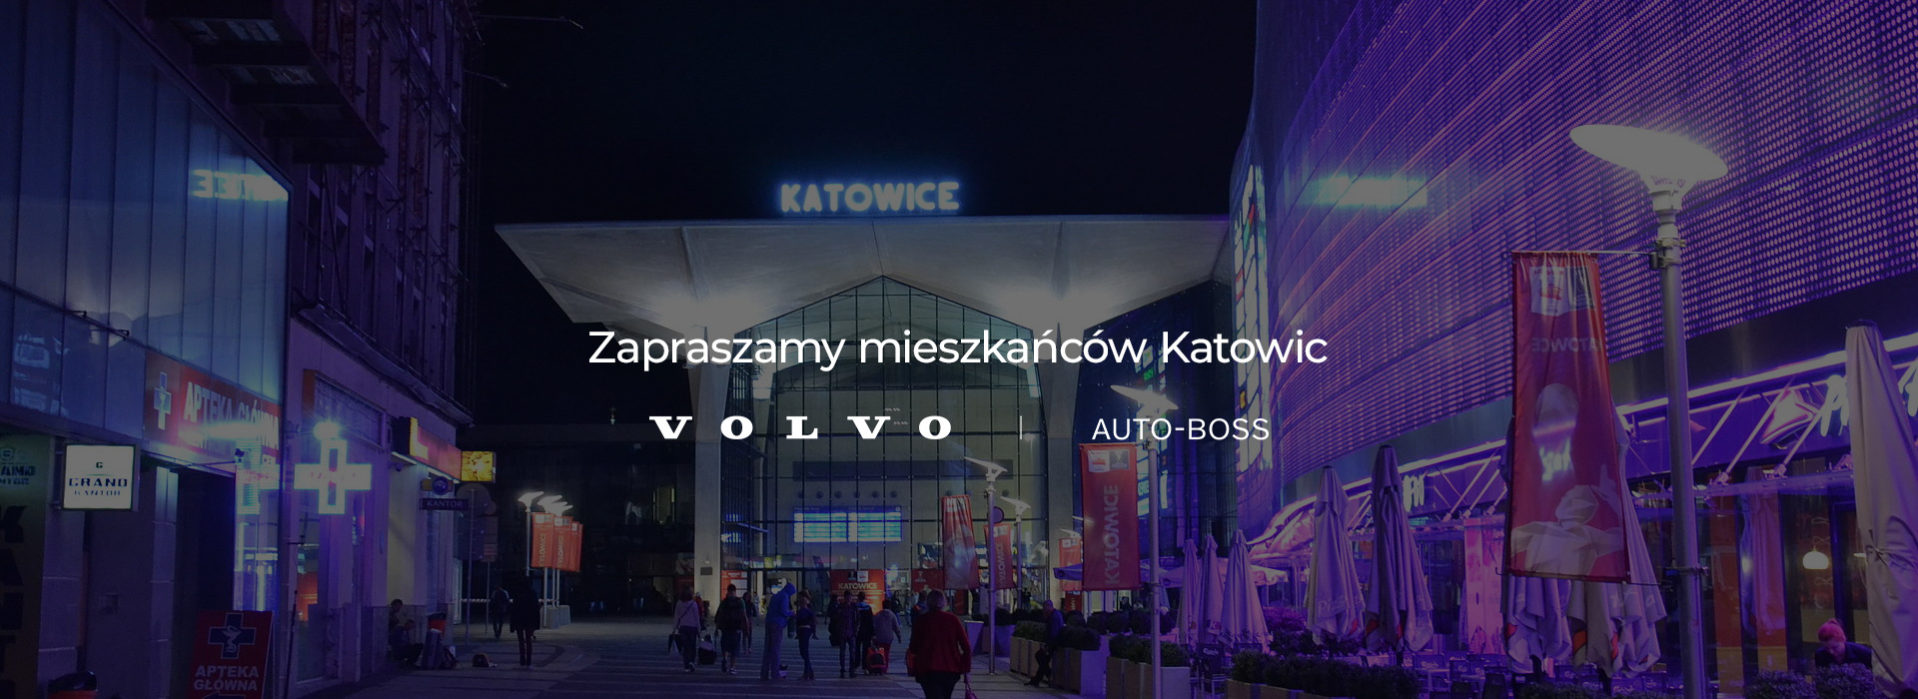 Salon i Serwis Volvo Katowice? Dealer ASO AutoBoss